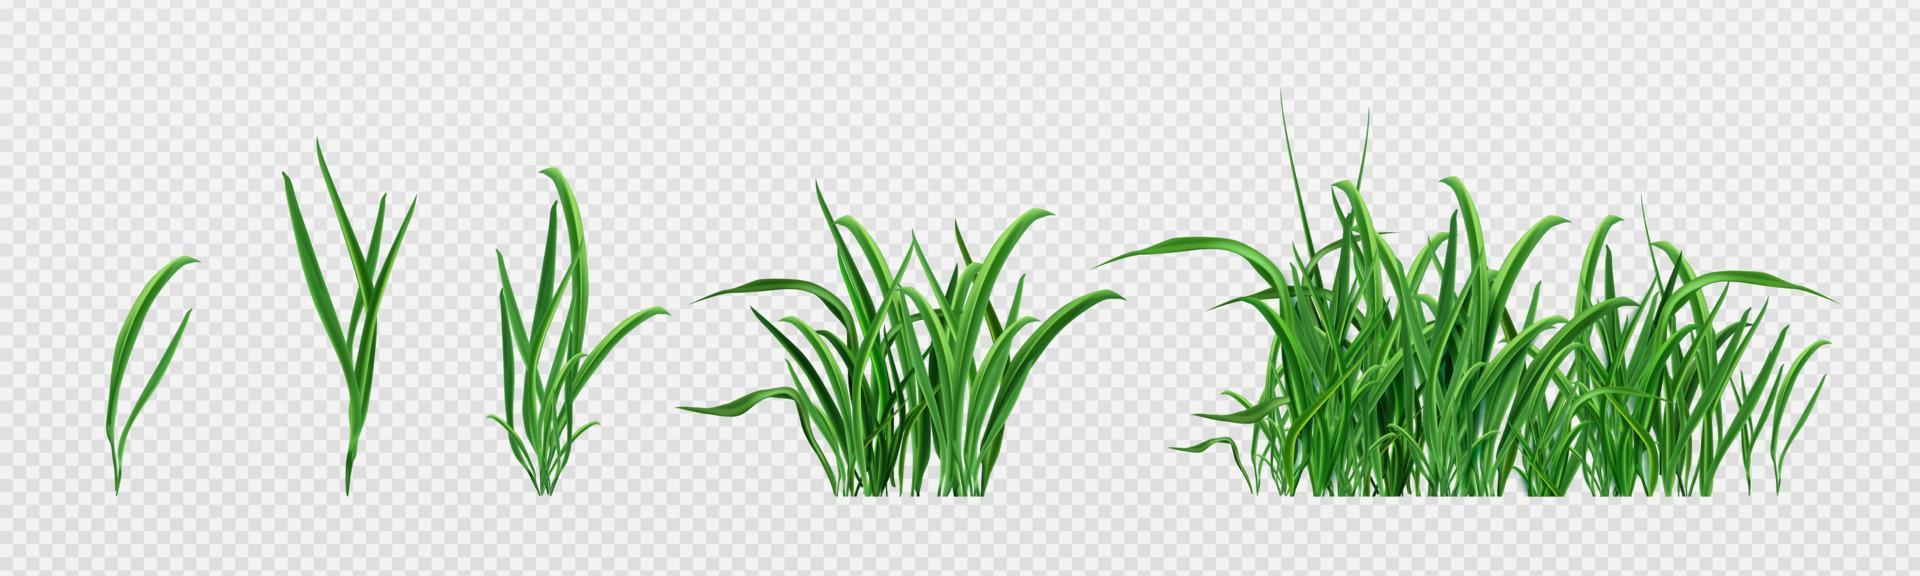 realistisk uppsättning av grön gräs groddar vektor